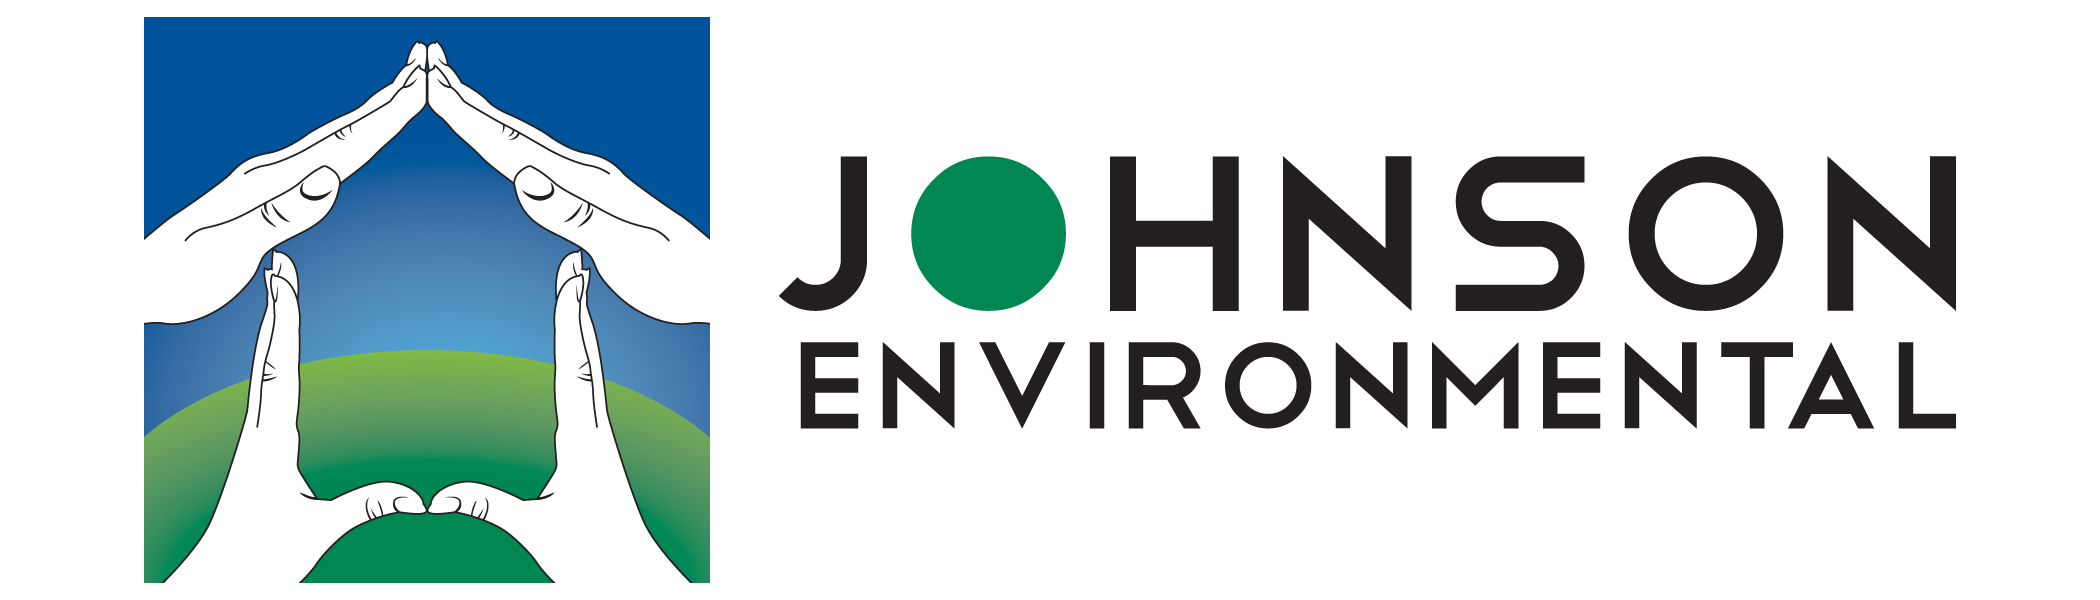 Johnson Environmental company logo